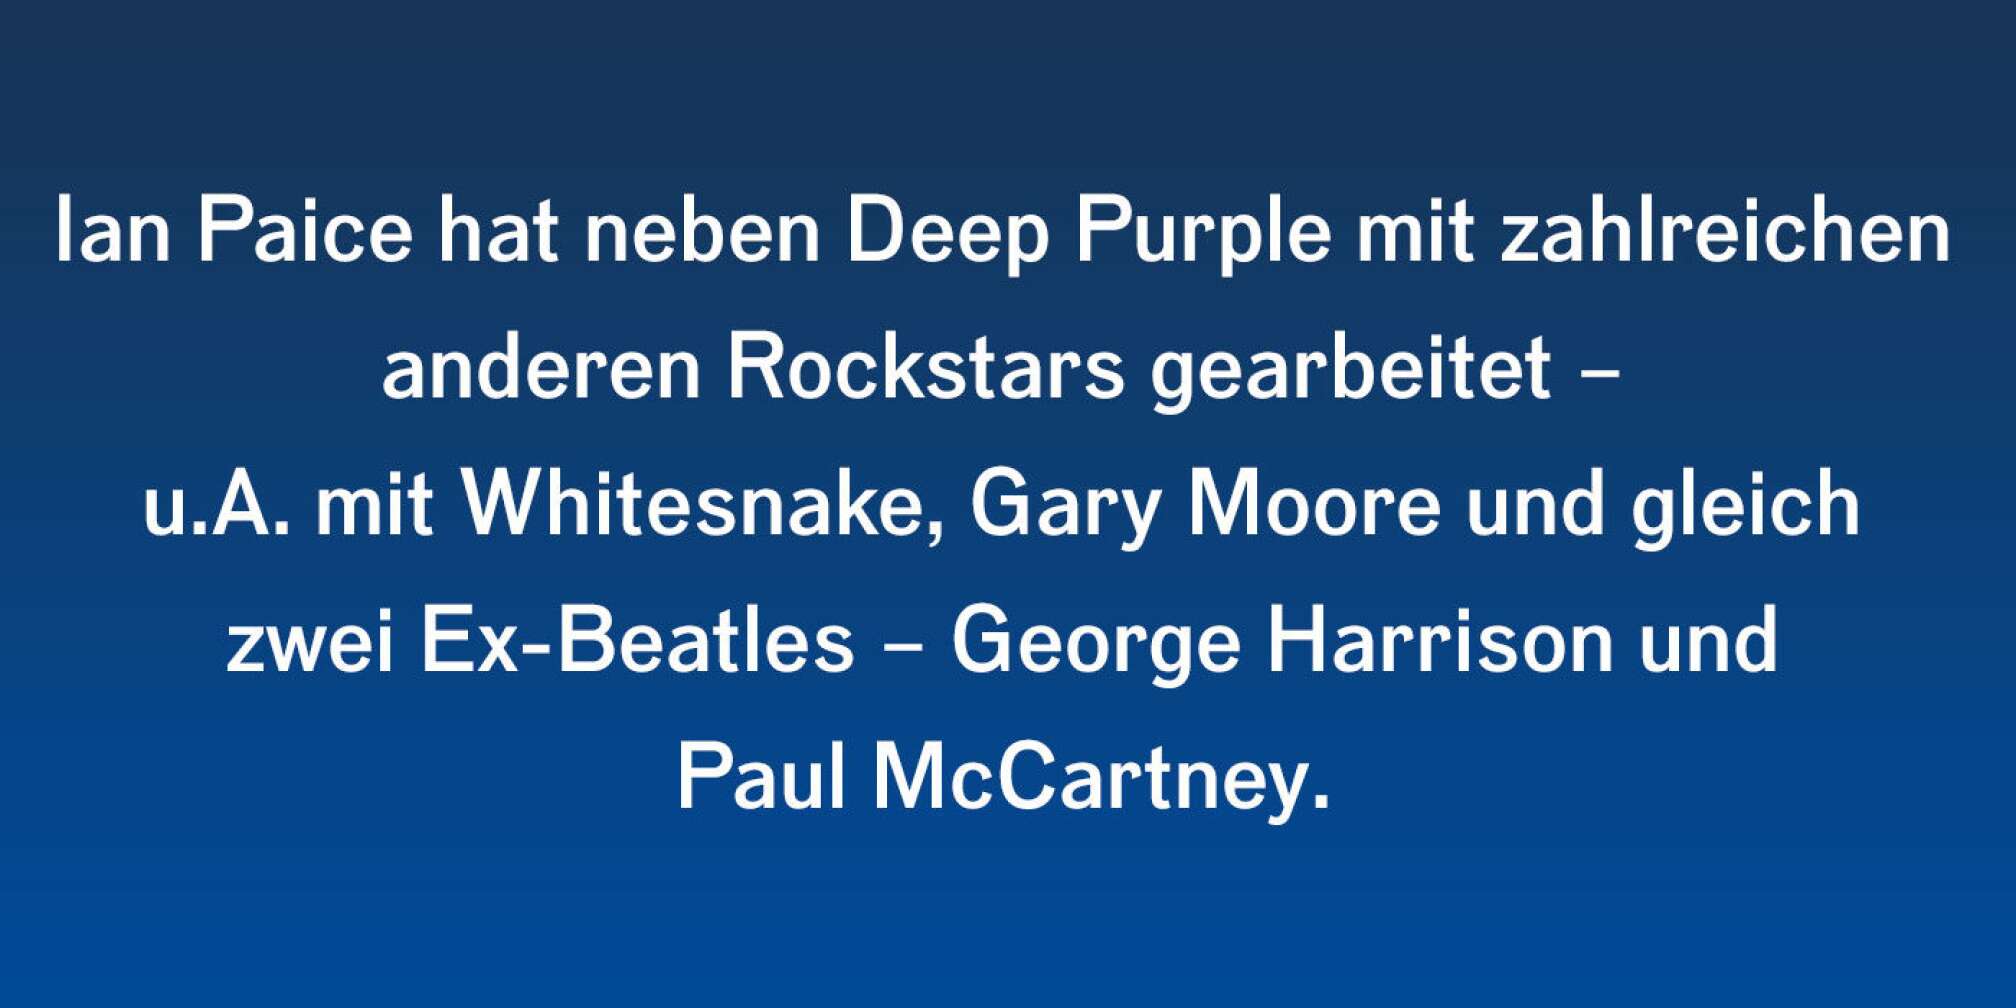 Ian Paice hat neben Deep Purple mit zahlreichen anderen Rockstars gearbeitet - u.A. mit Whitesnake, Gary Moore und gleich zwei Ex-Beatles: George Harrison und Paul McCartney.